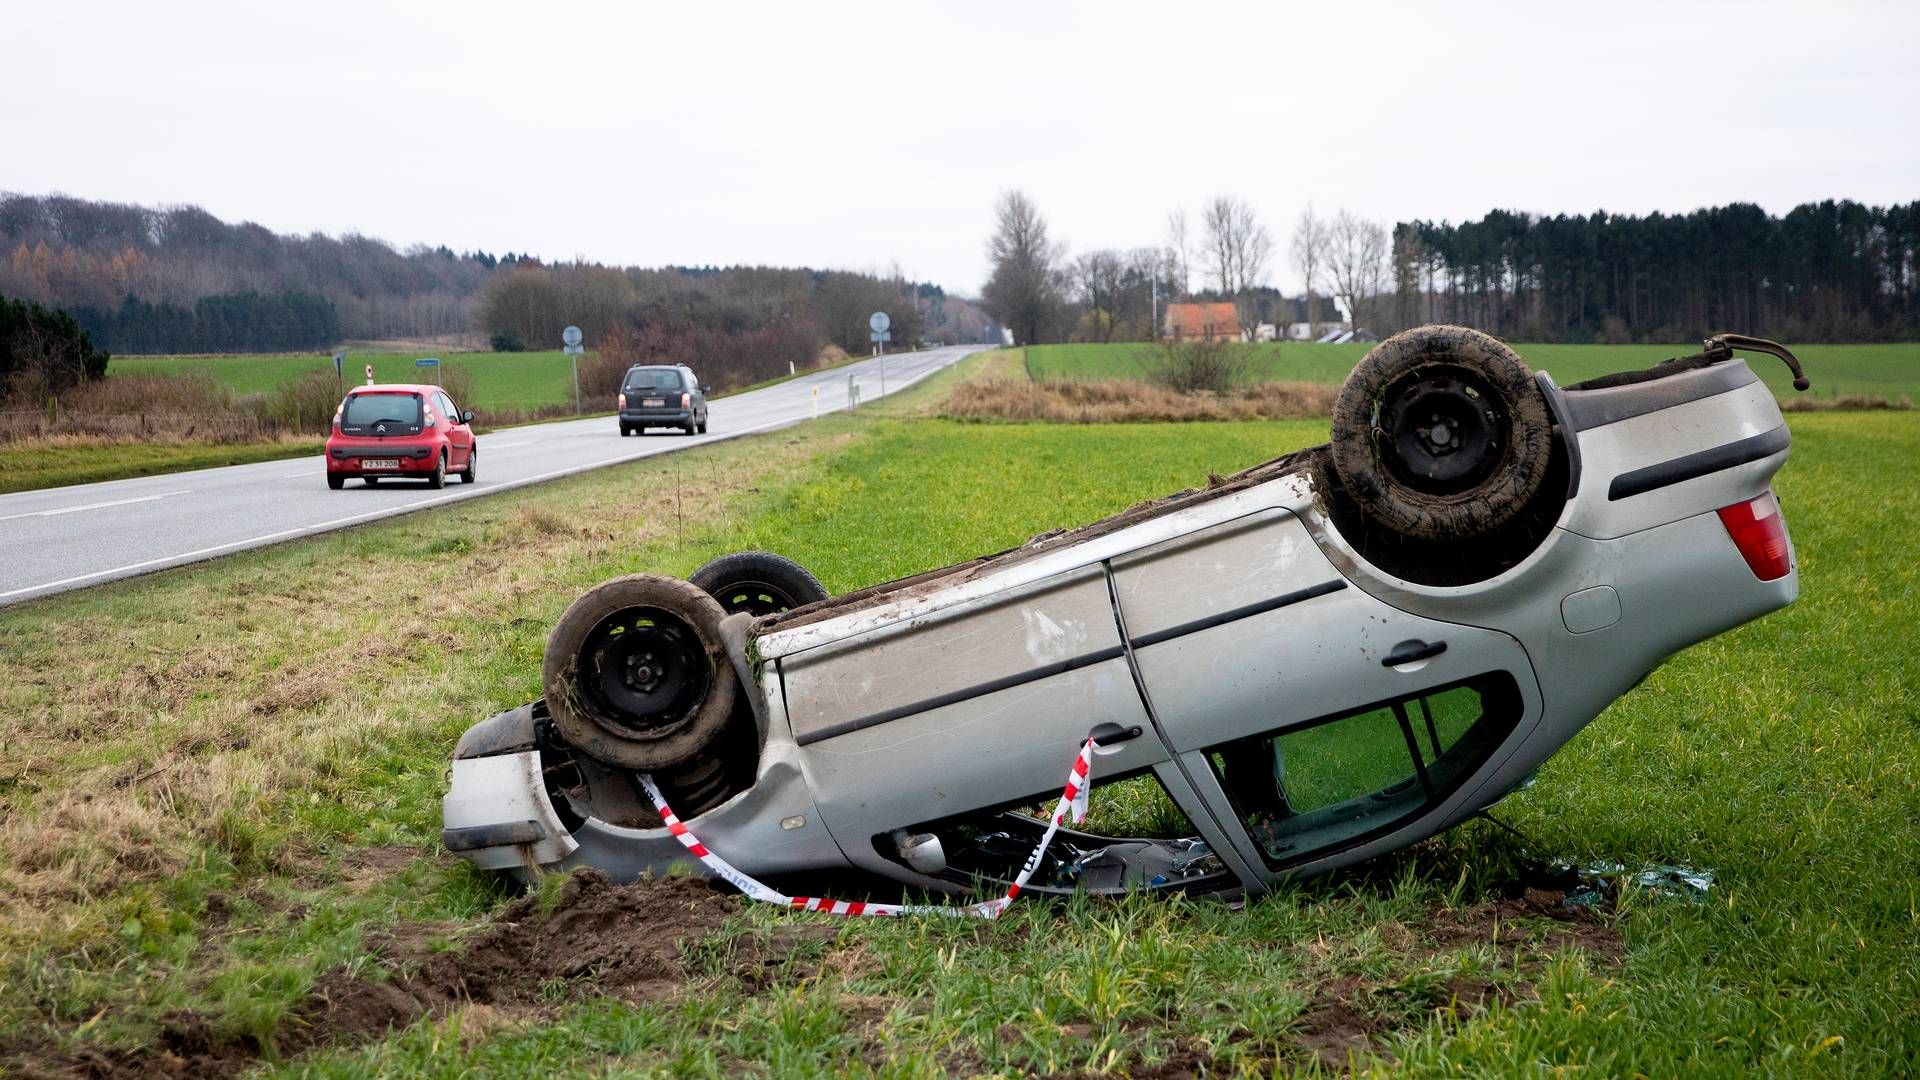 Der har været flere skader på biler i år, og forsikringsselskaberne ser nu ind i at hæve priserne. | Foto: Finn Frandsen